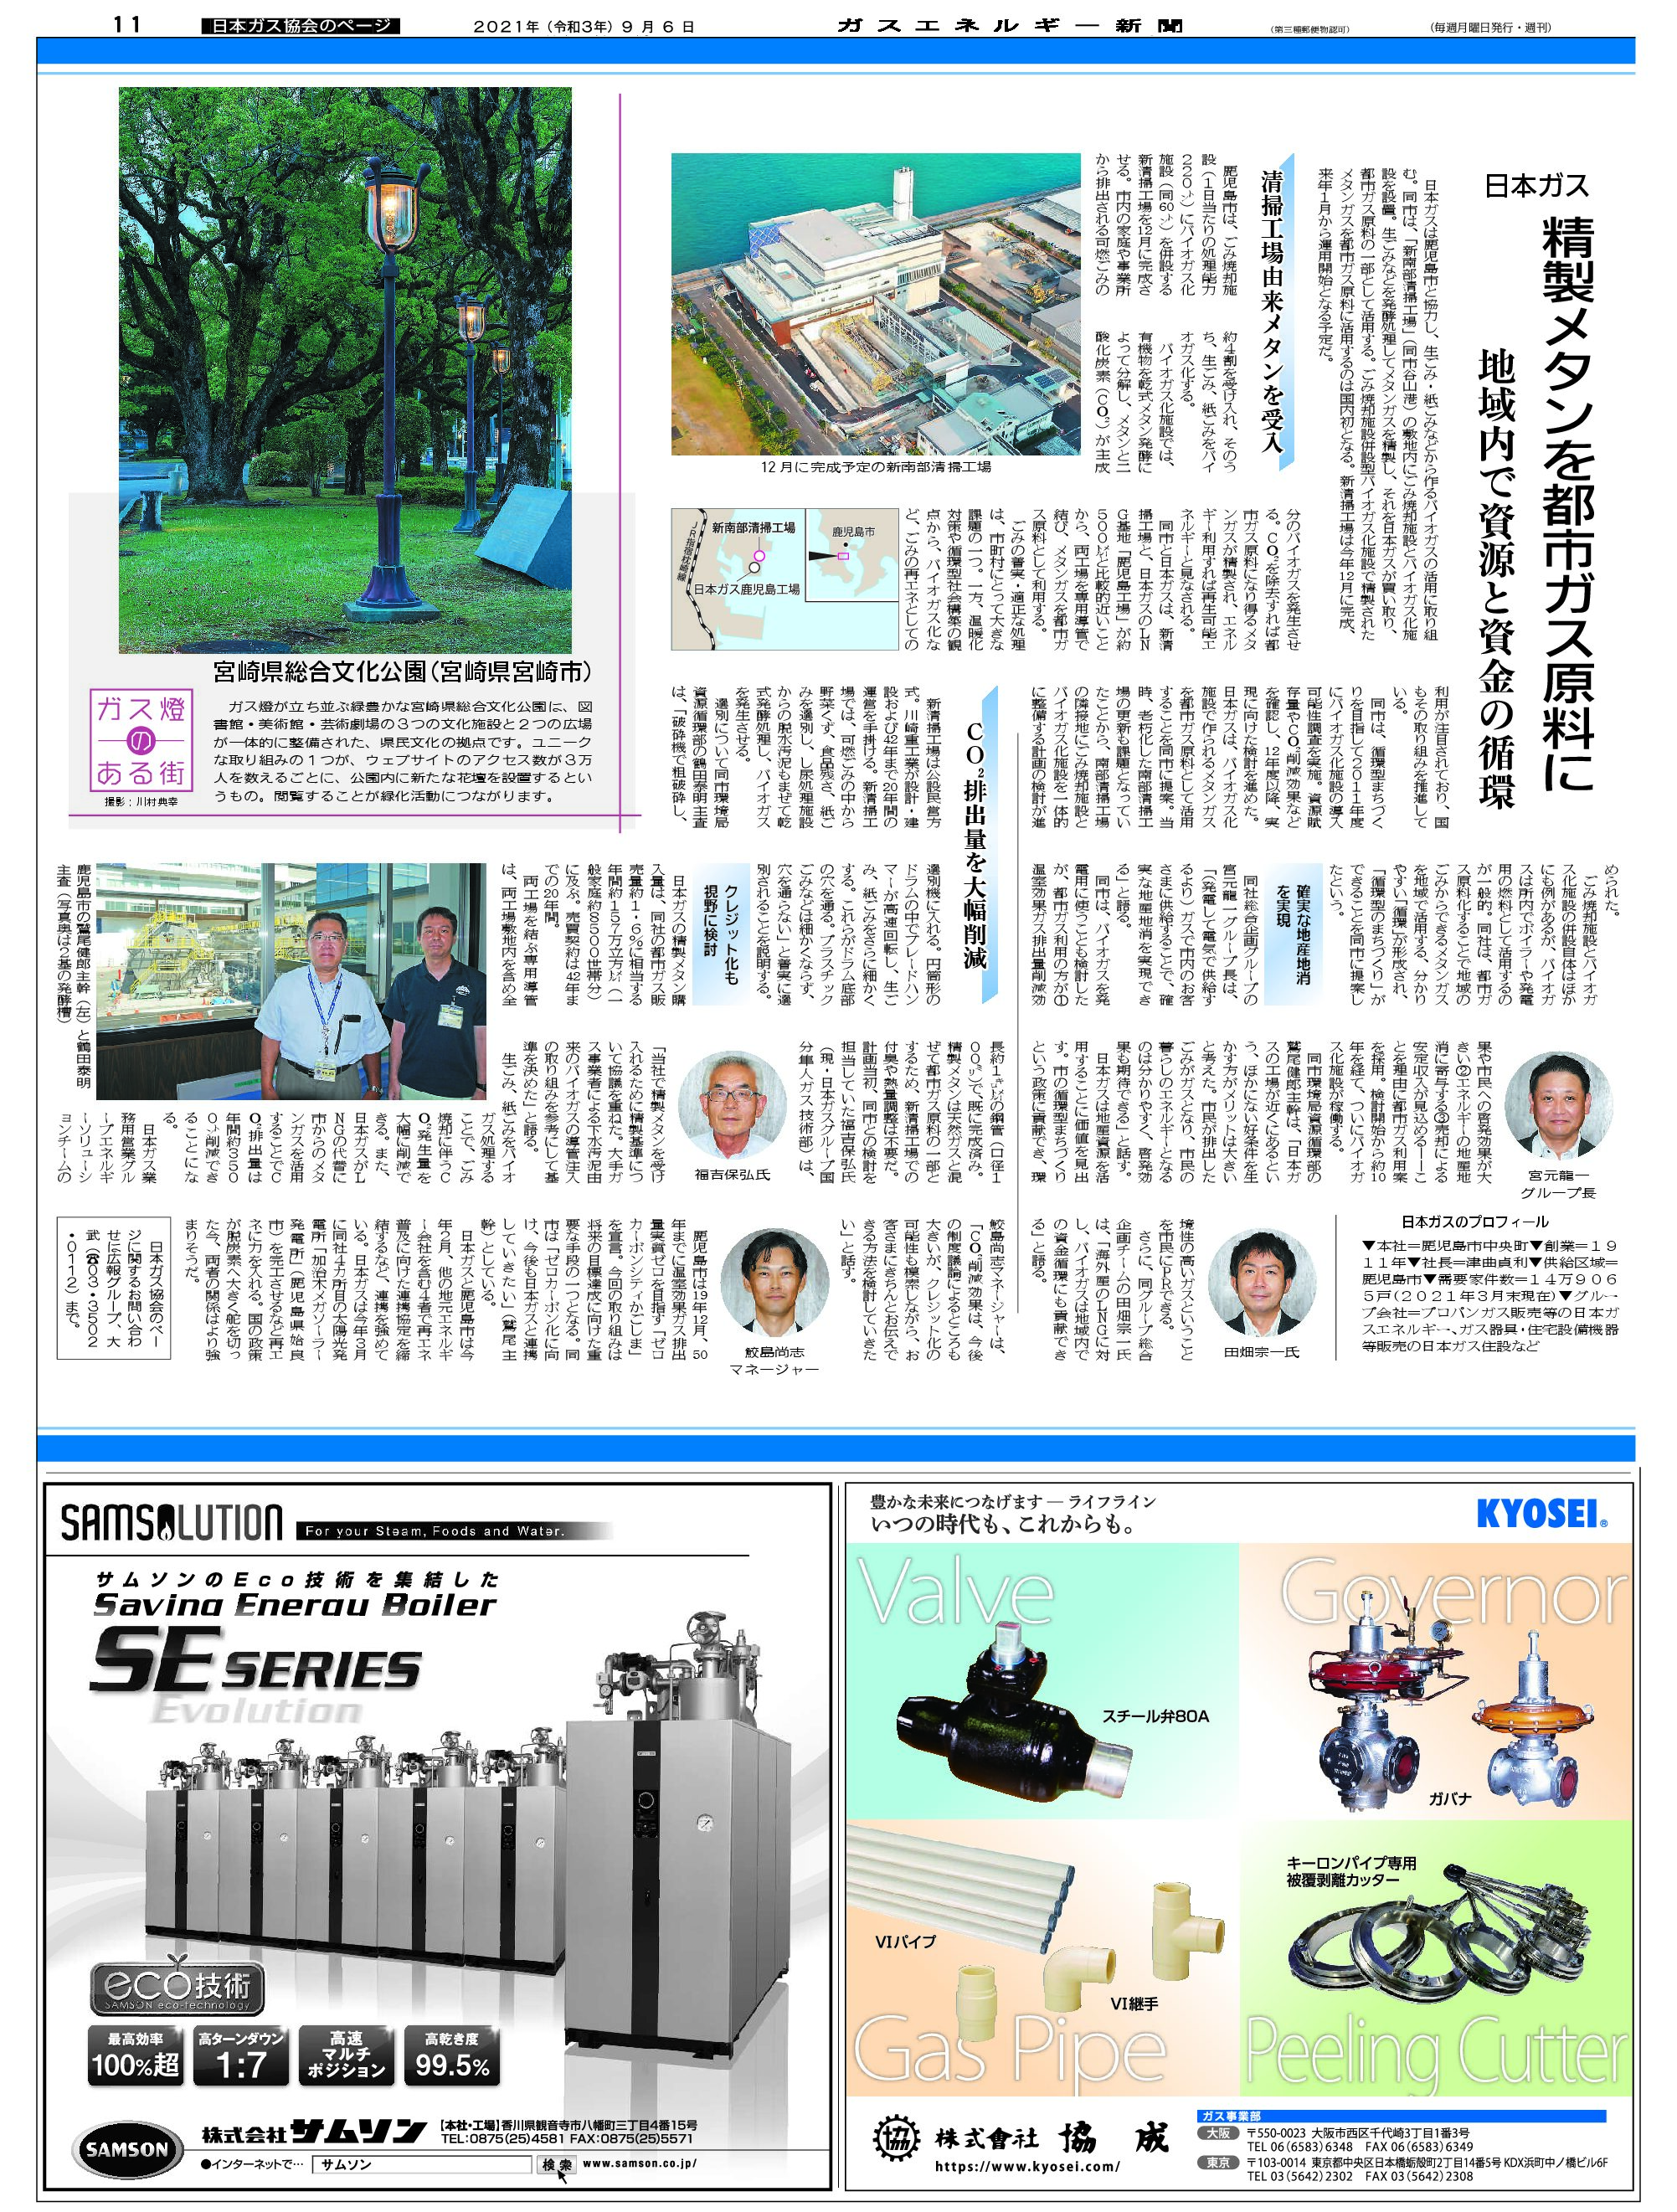 【日本ガス協会のページ】自治体との連携/(事例2)日本ガス——精製メタンを都市ガス原料に、地域内で資源と資金の循環